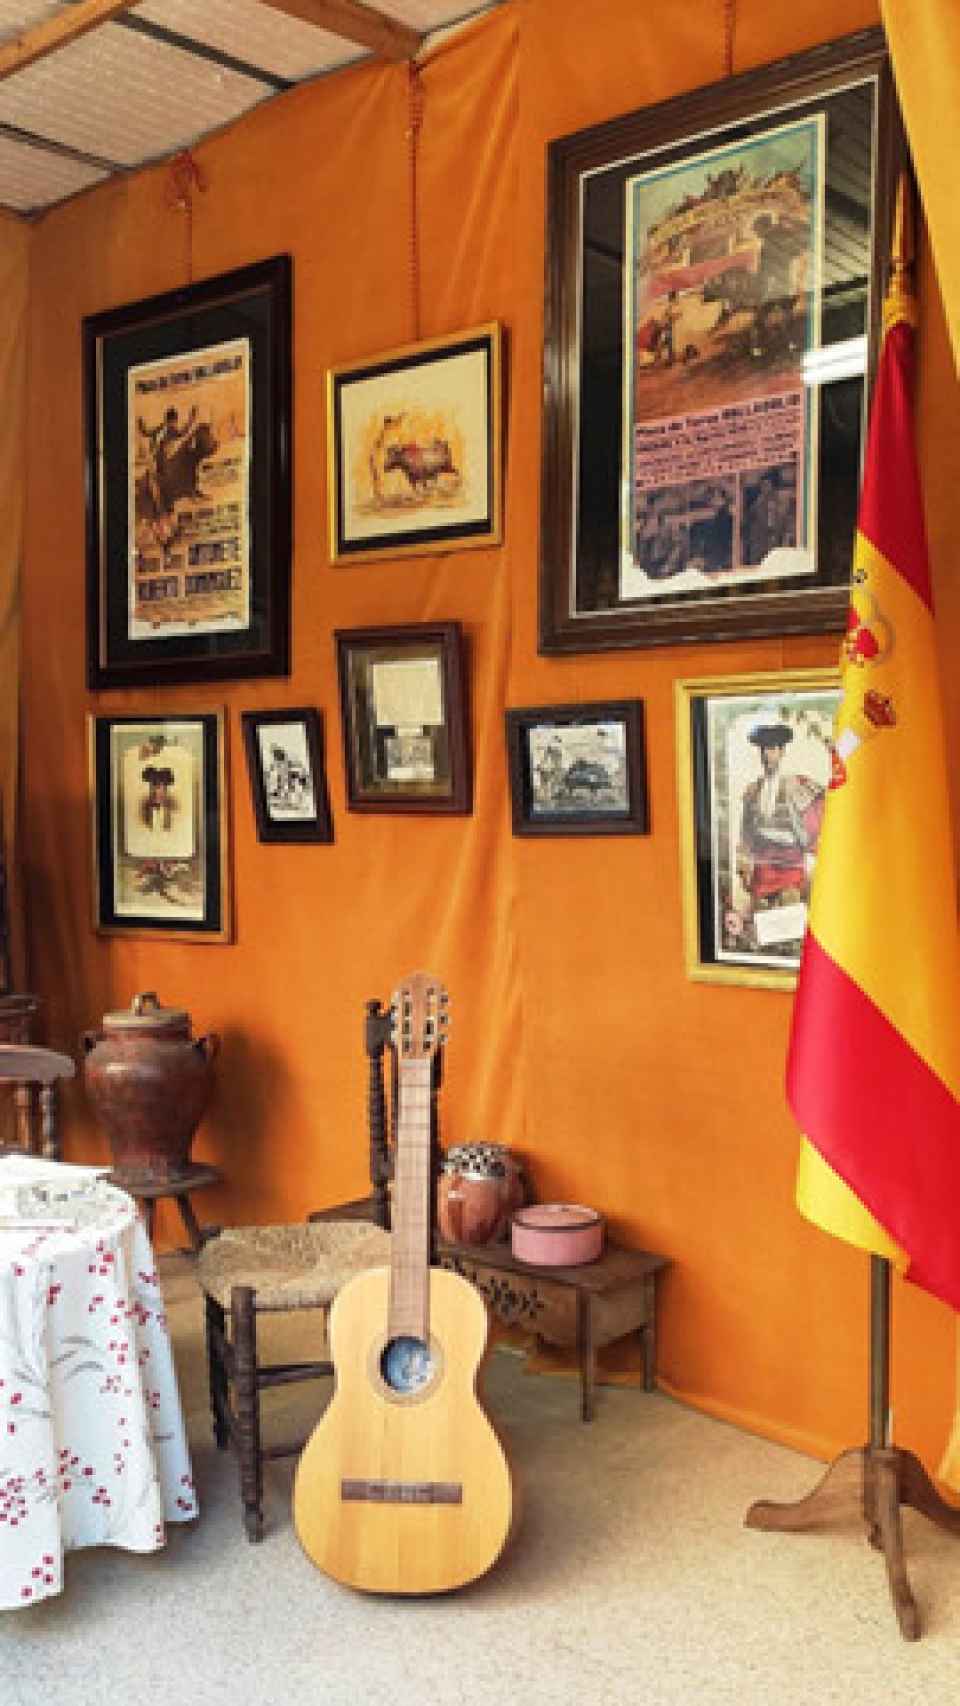 Recuerdos taurinos que conforman historia y un bello colorido en el escaparate de la familia Angulo